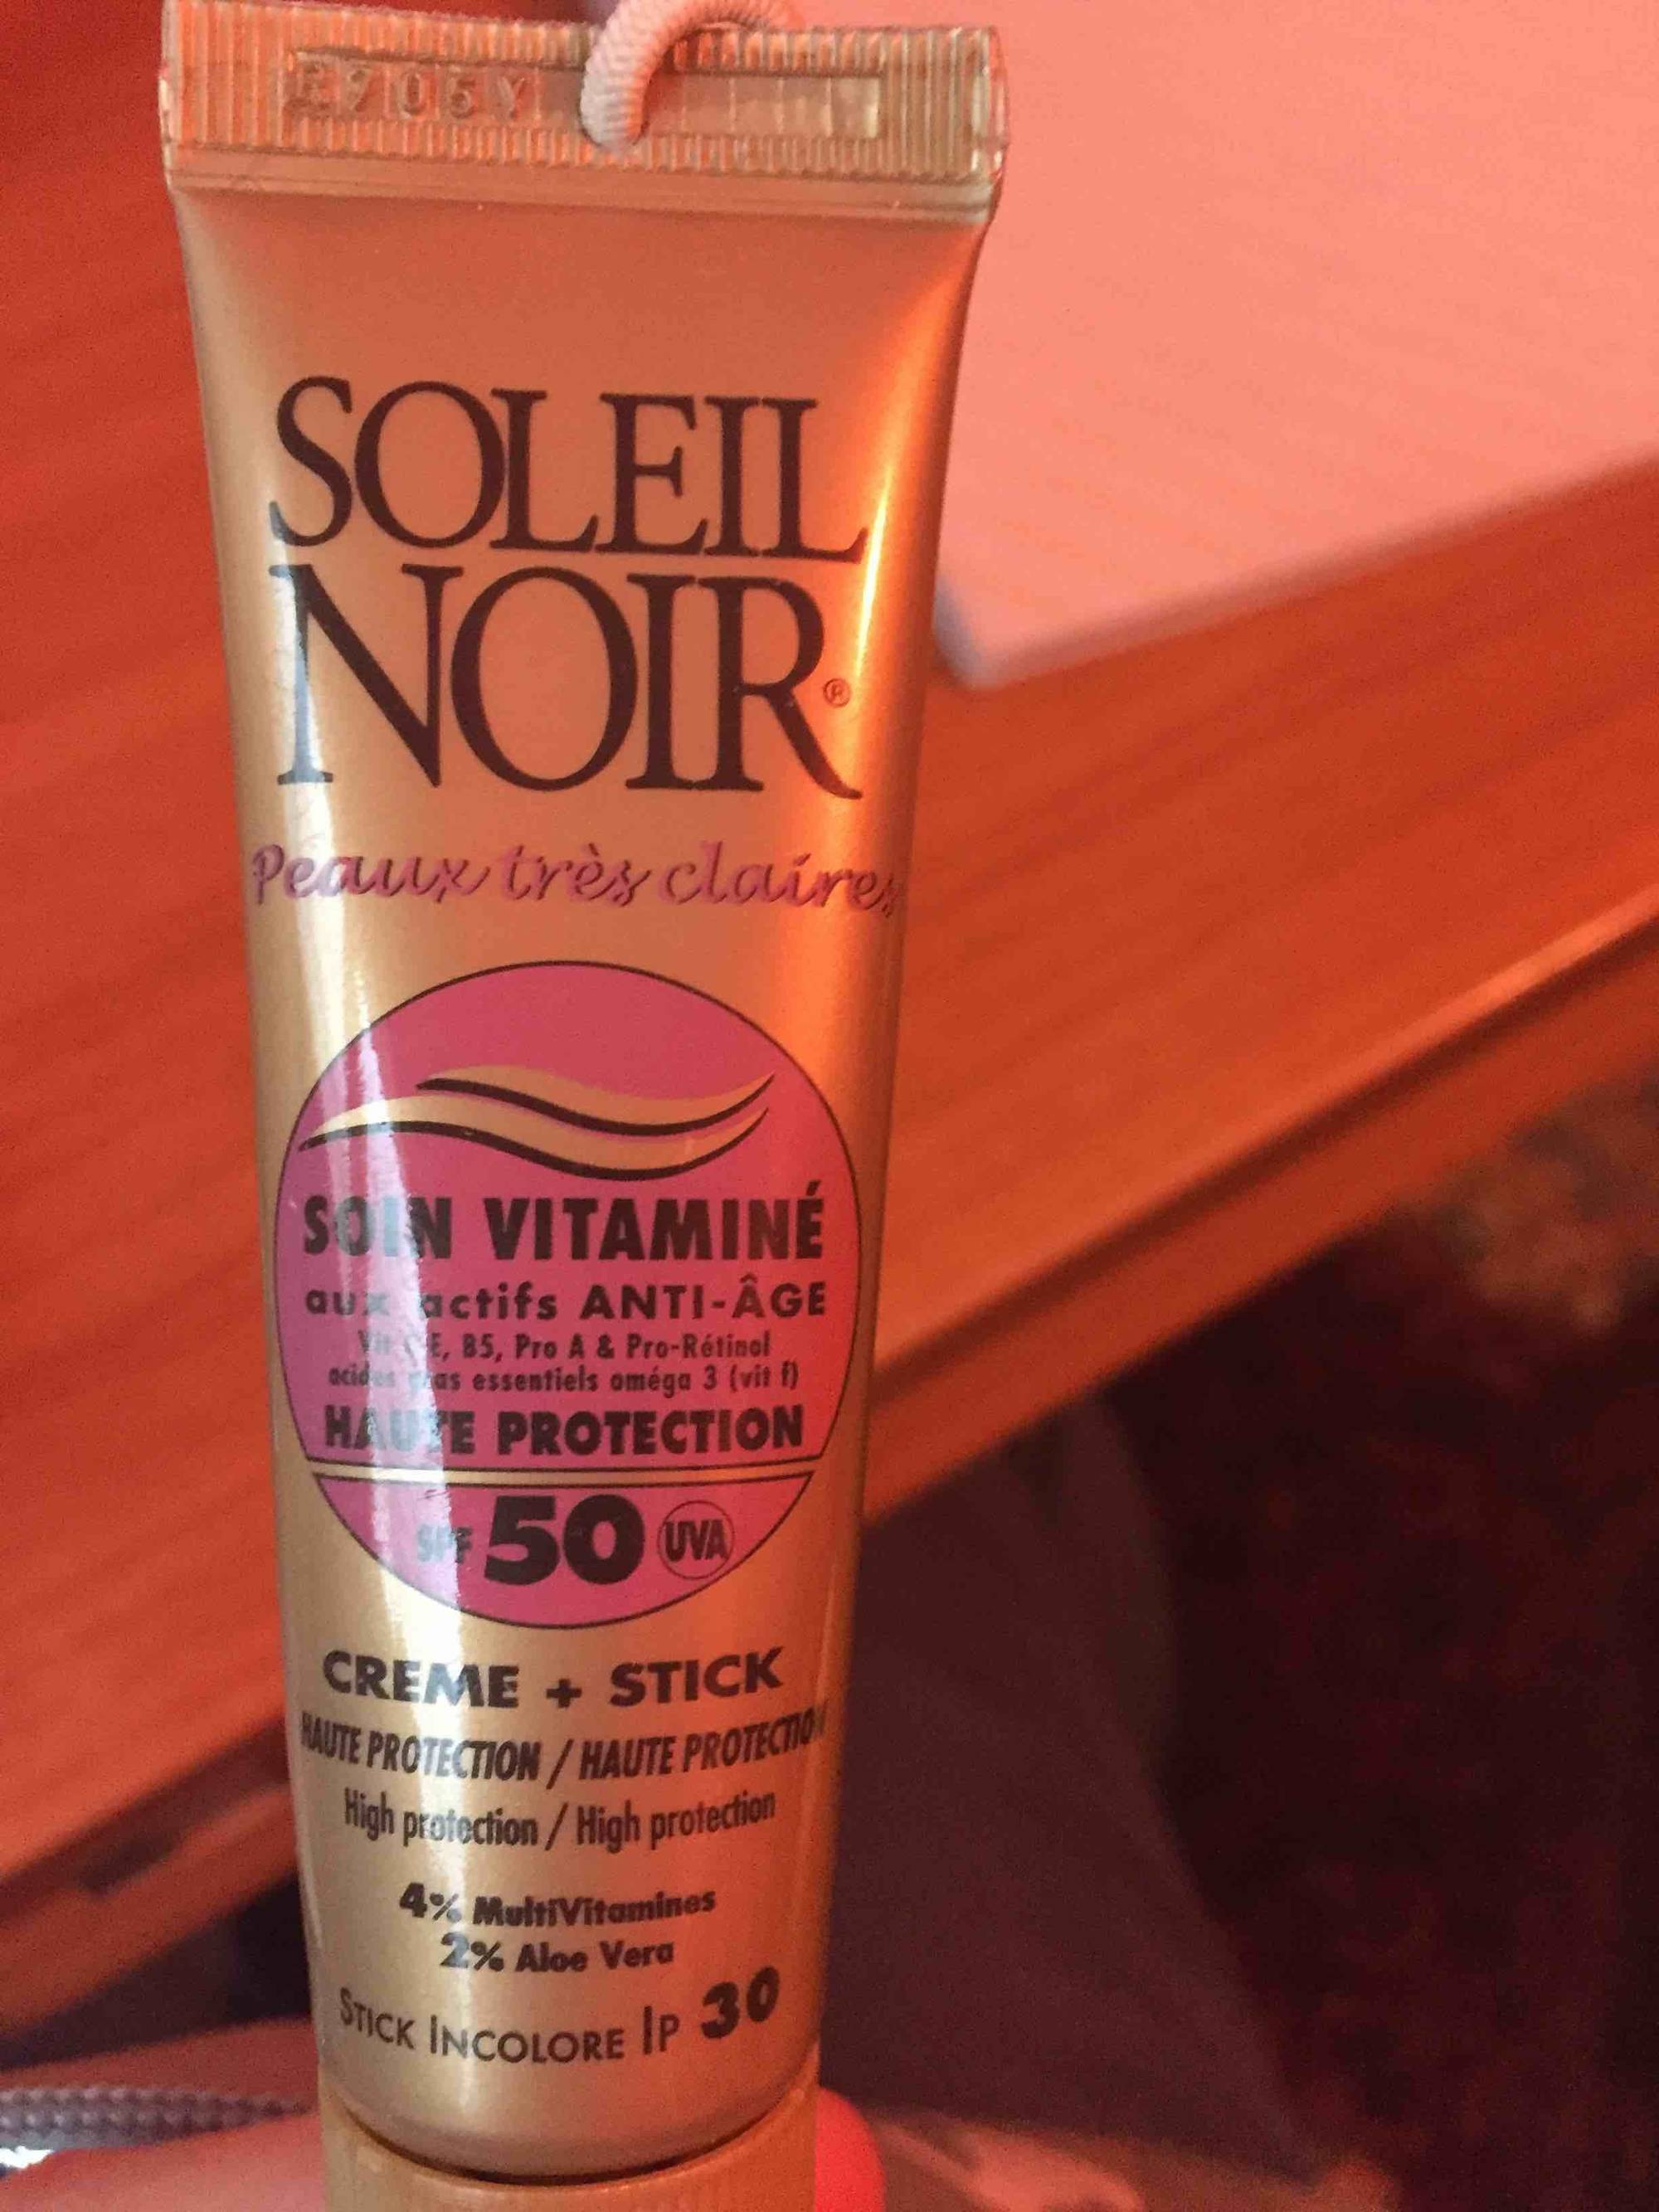 SOLEIL NOIR - Soin Vitaminé SPF 50 + Stick incolore LP 30